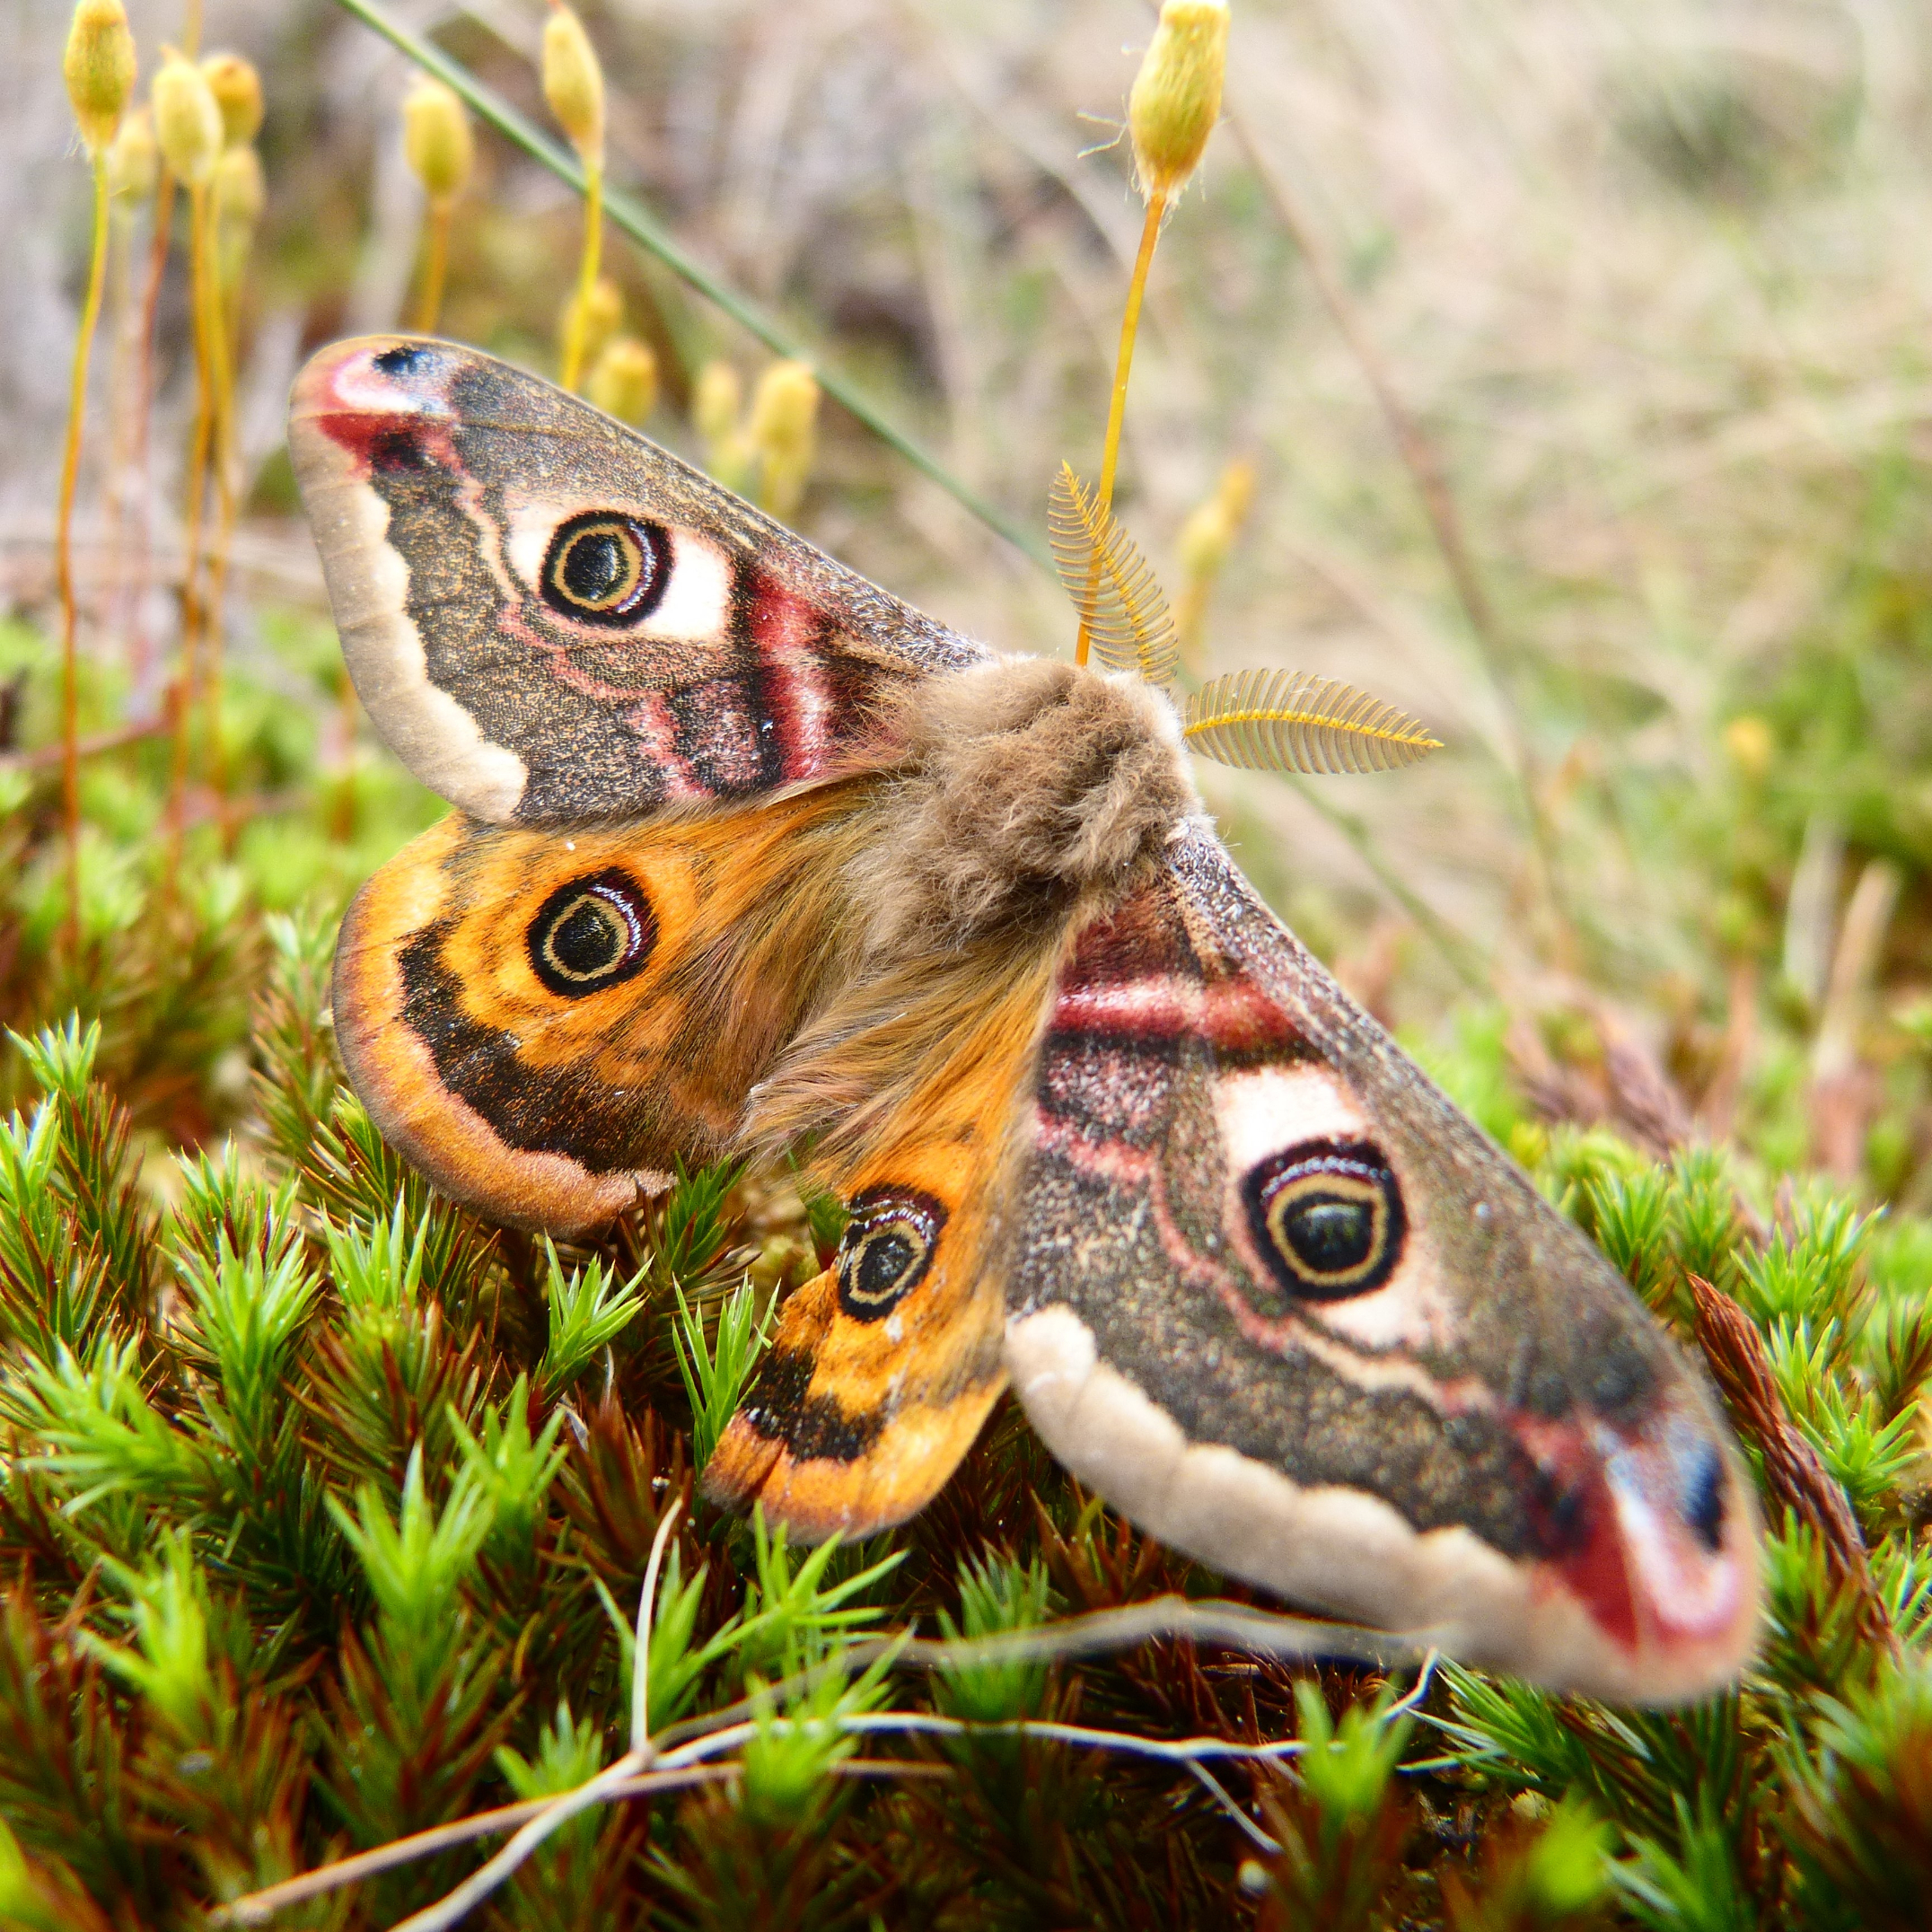 Emperor moth Photo credit: Melissa Shaw